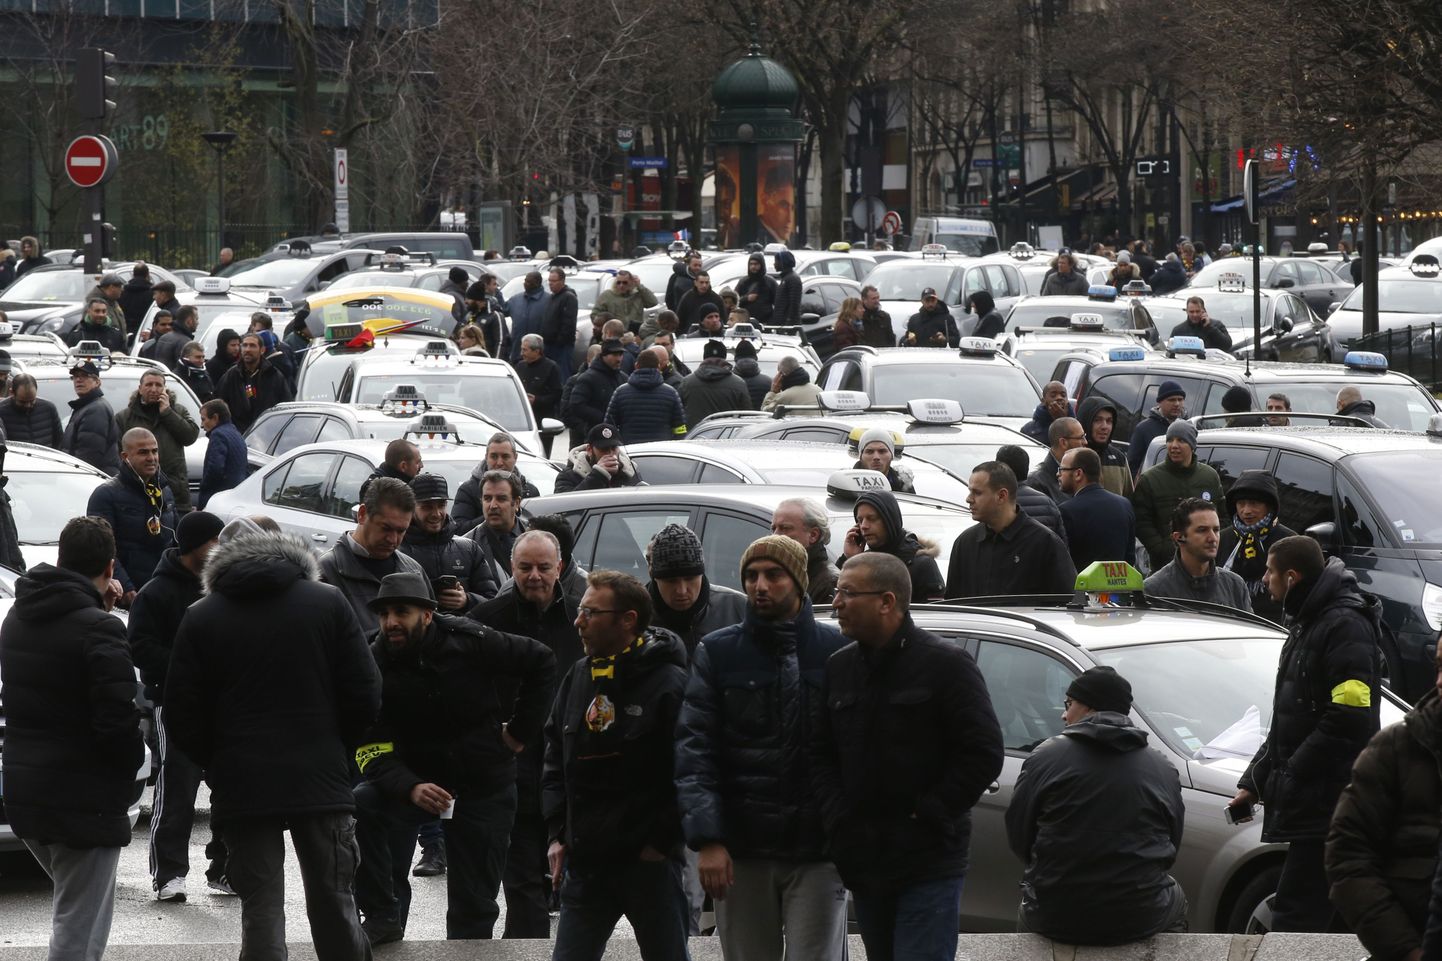 Uberi vastu protestivad taksojuhid täna Pariisis.